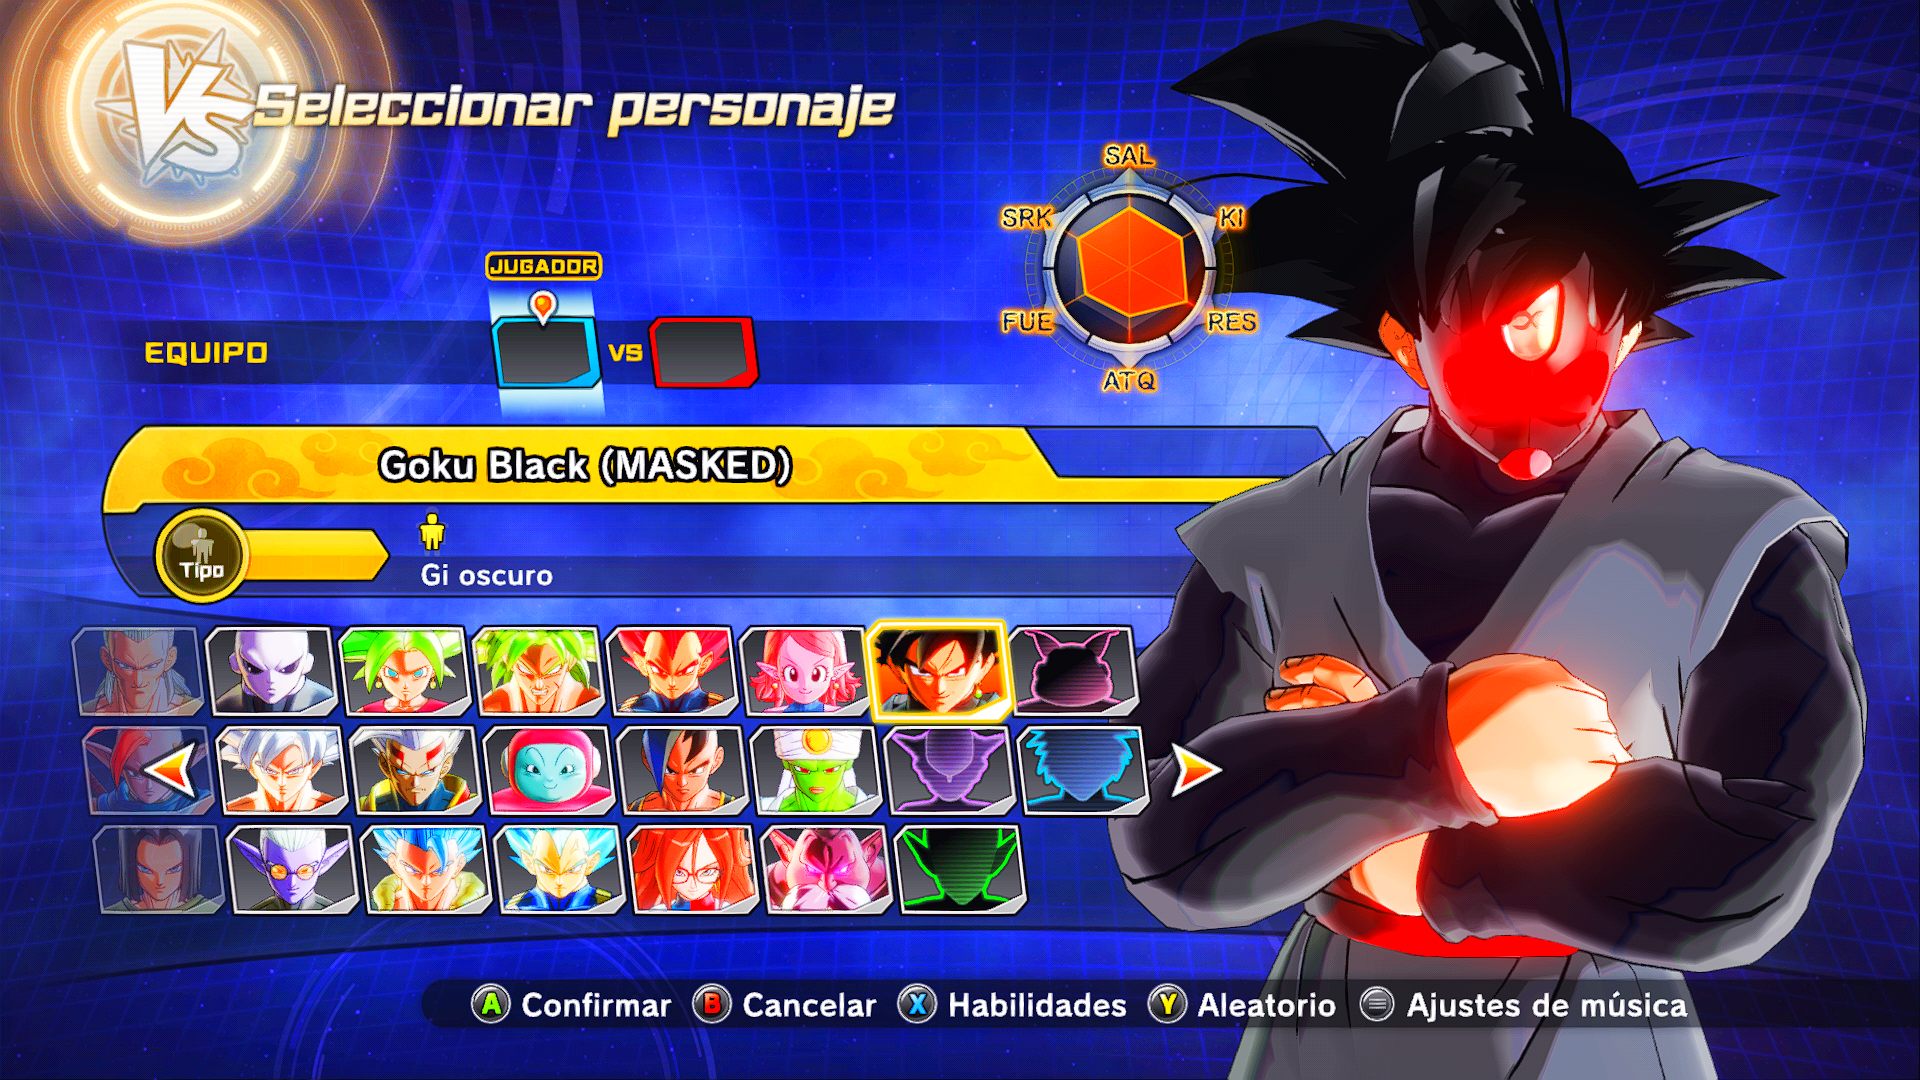 Goku black masked